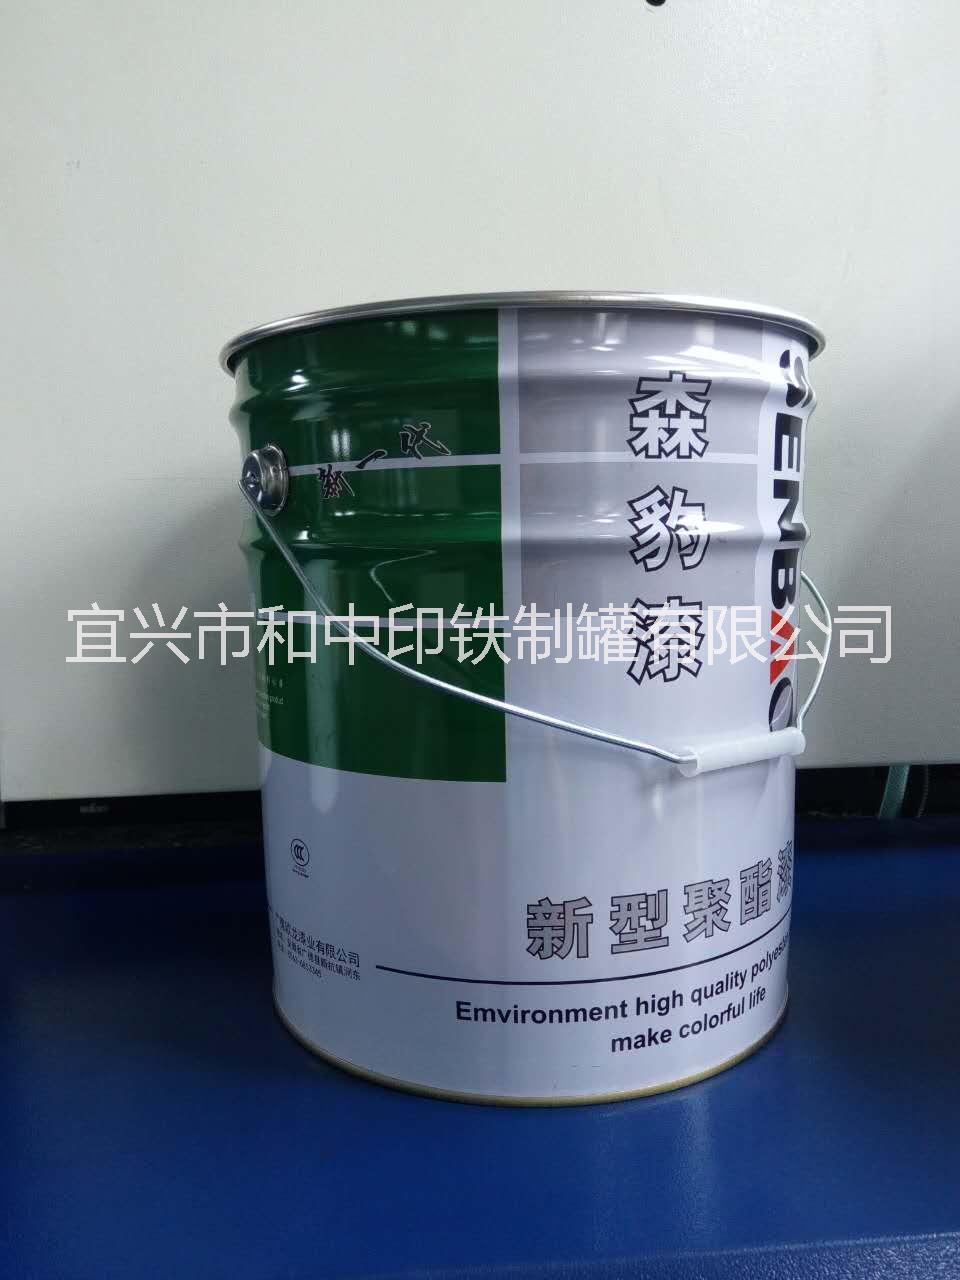 用于油料|涂料|油漆的3-25L铁桶包装 油漆包装桶 油料包装桶 包装桶厂家 江苏包装桶供应商